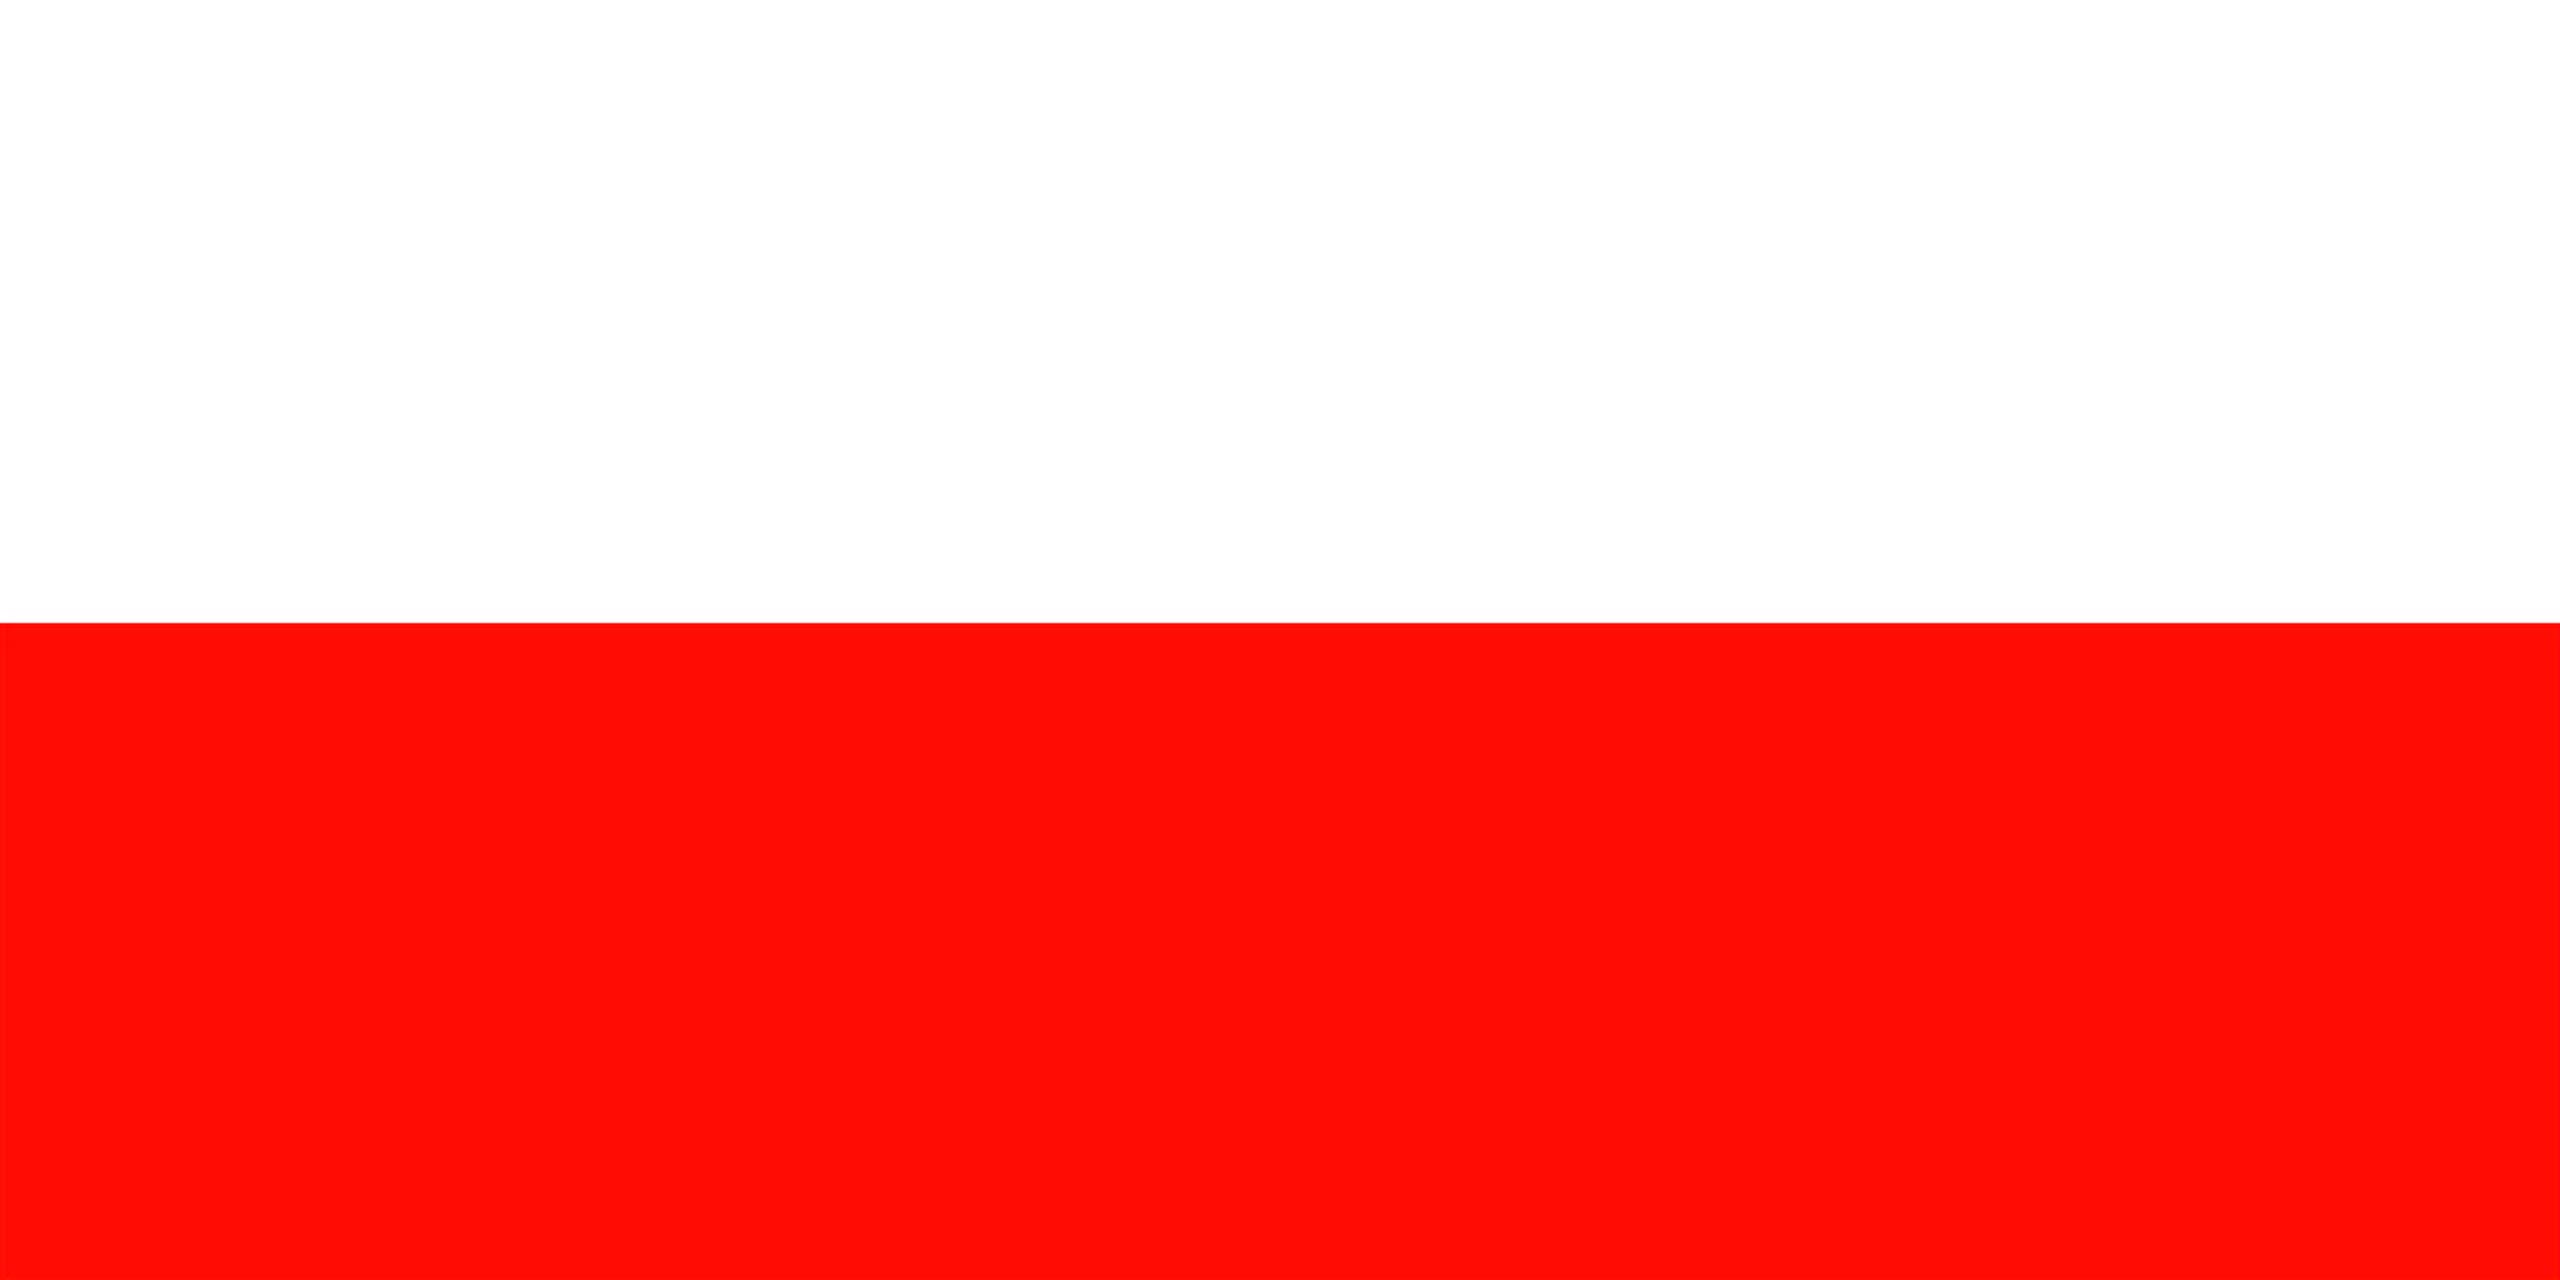 Alerta migratoria: Polonia – Abril 2015